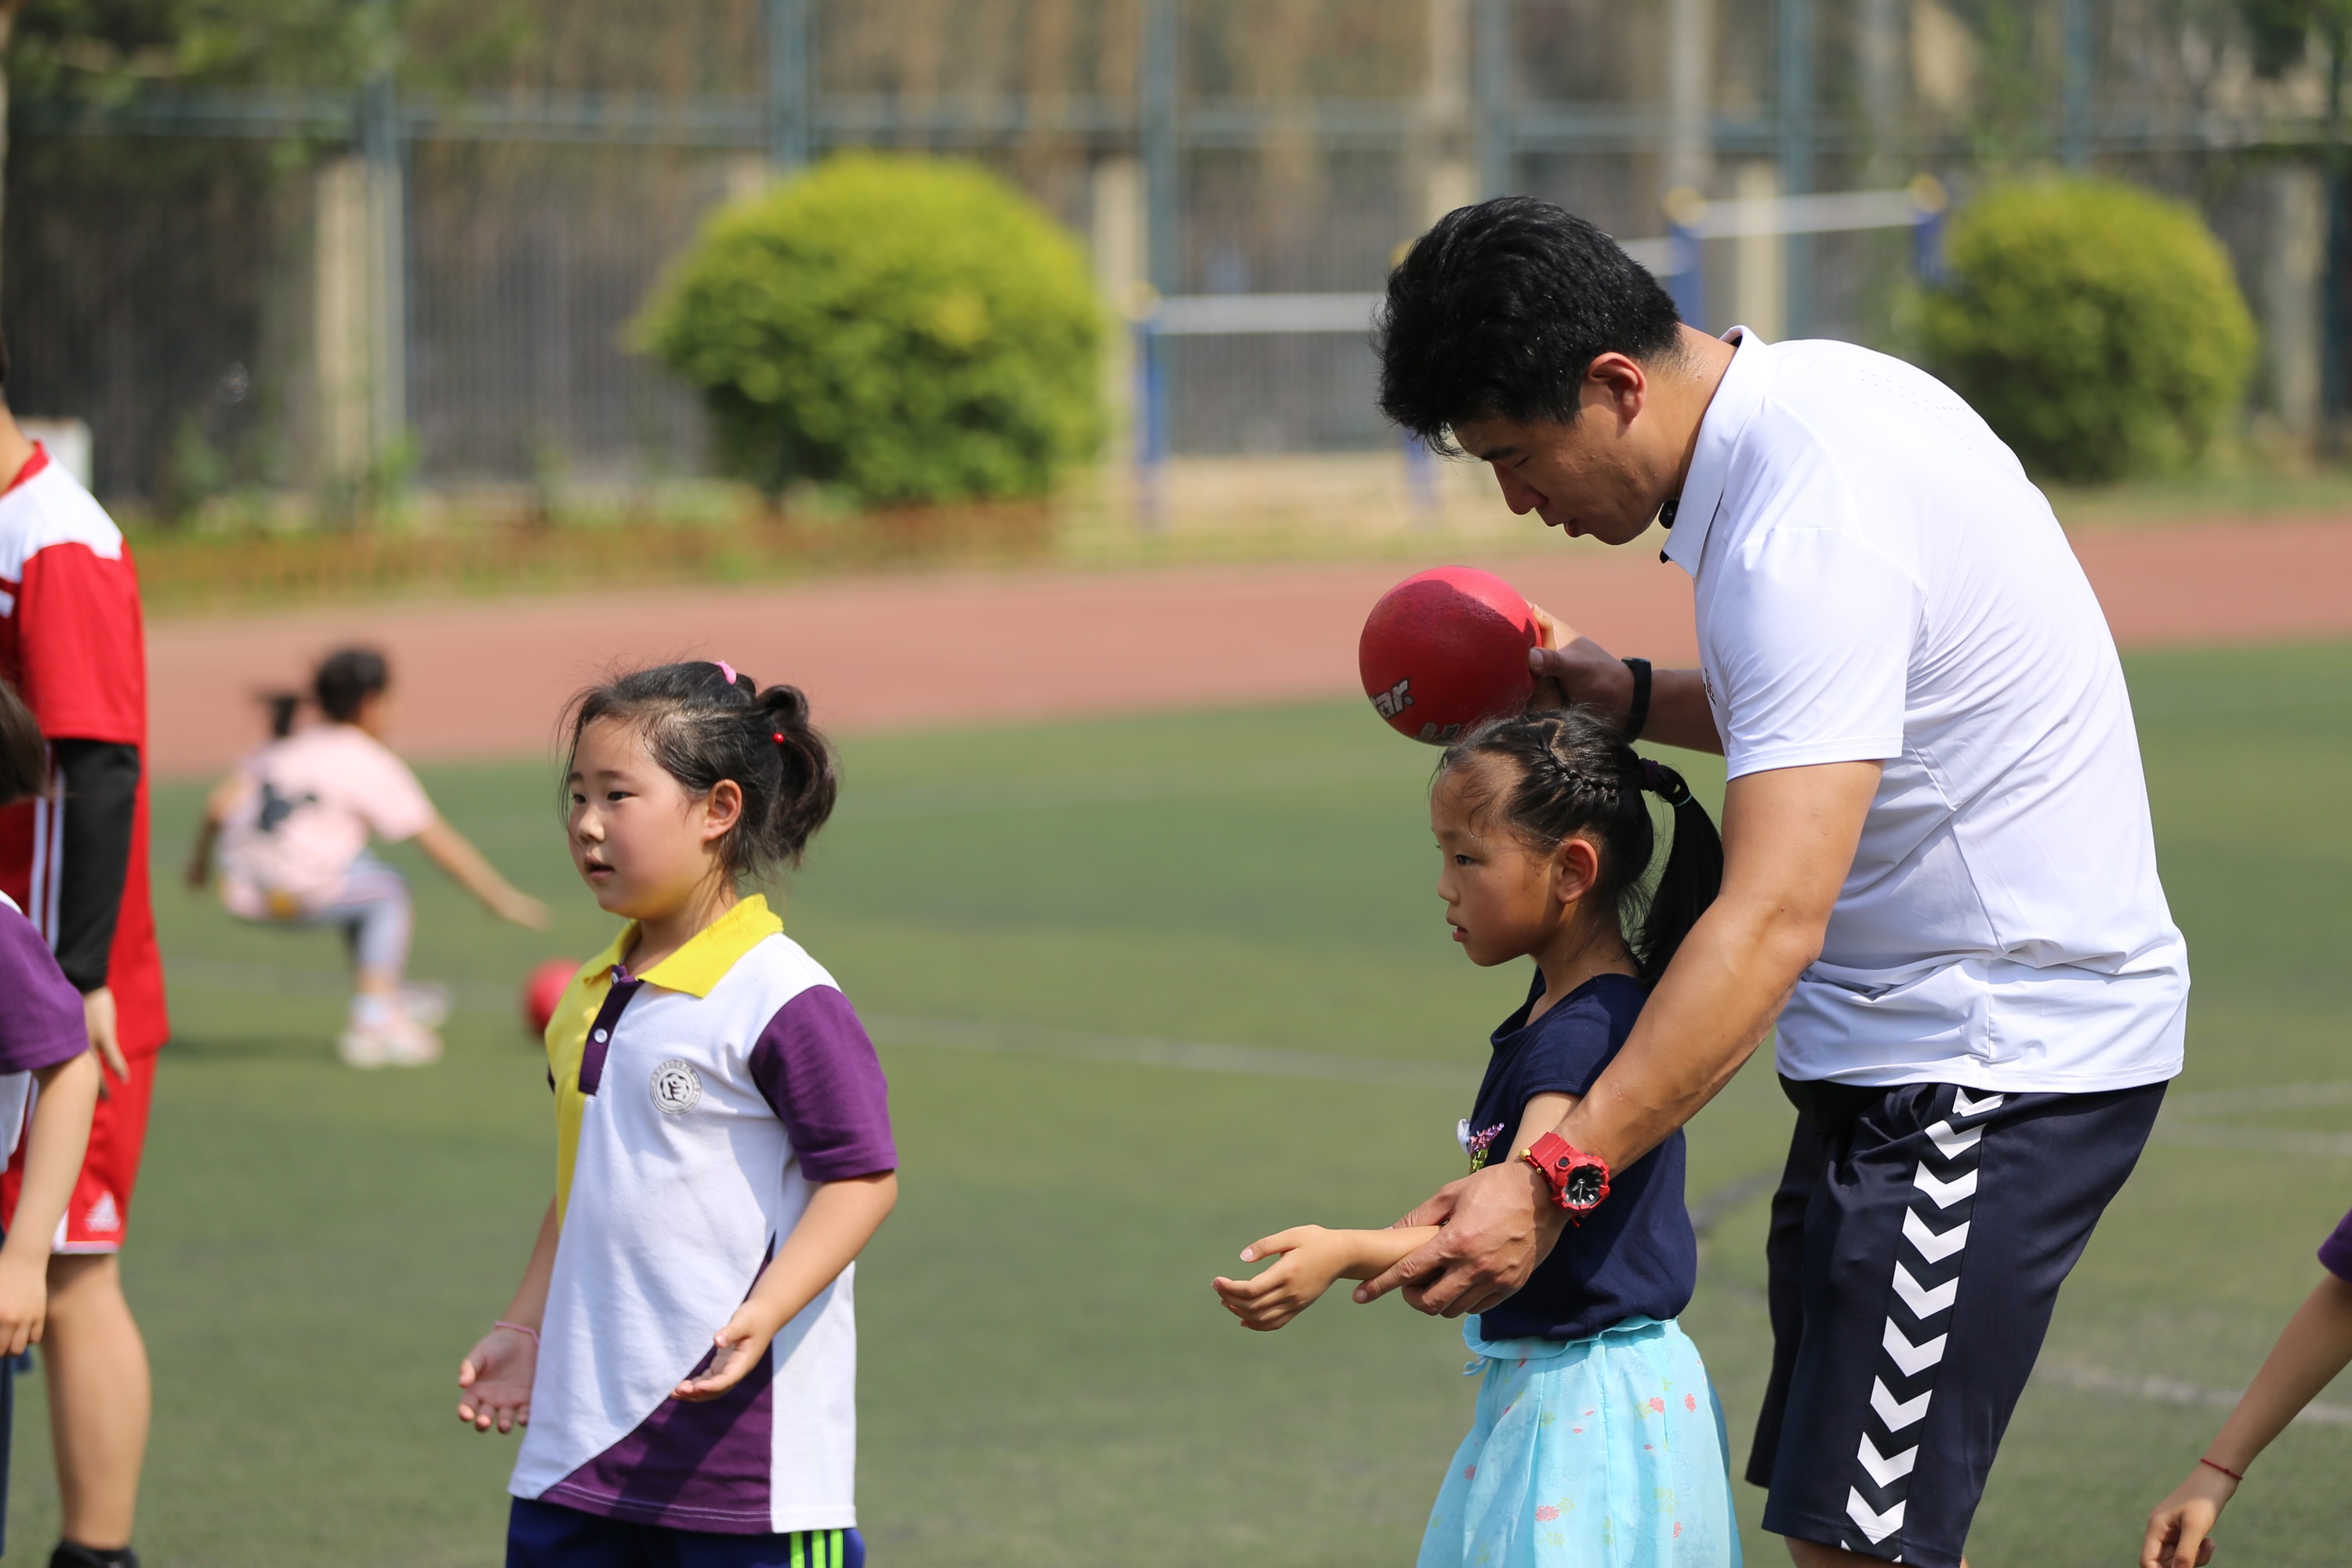 日本孩子的基本功、技术、传接、跑位超过中国孩子强